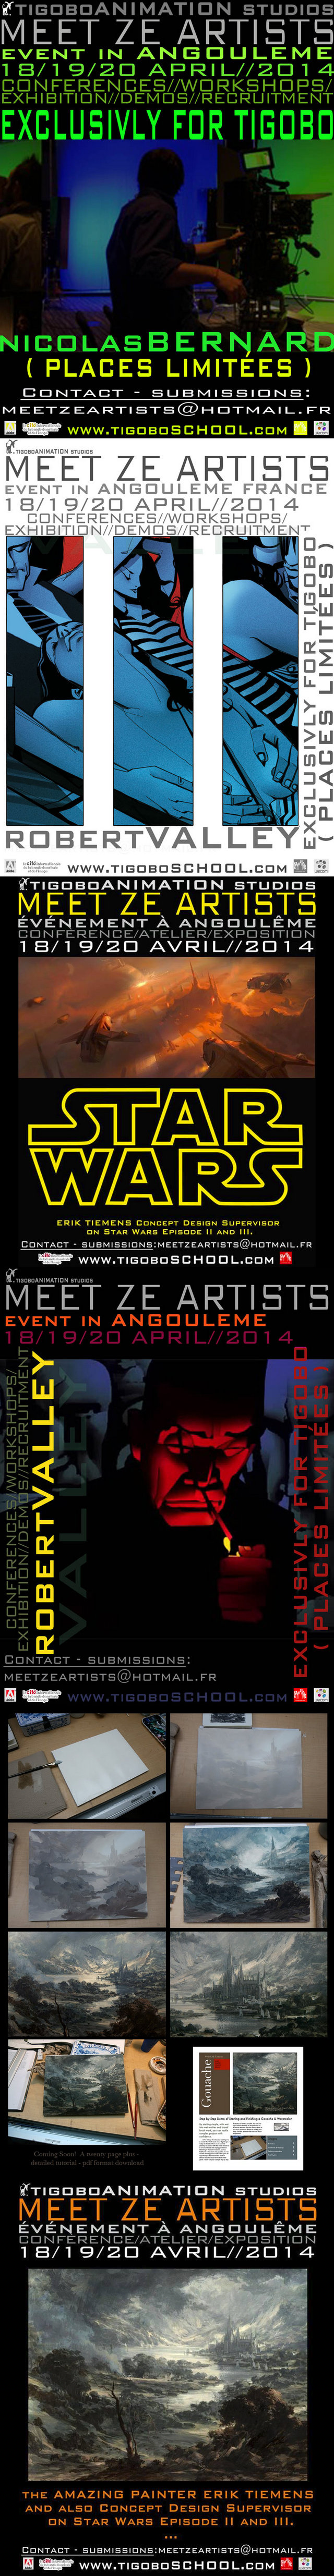 Meet Ze Artists